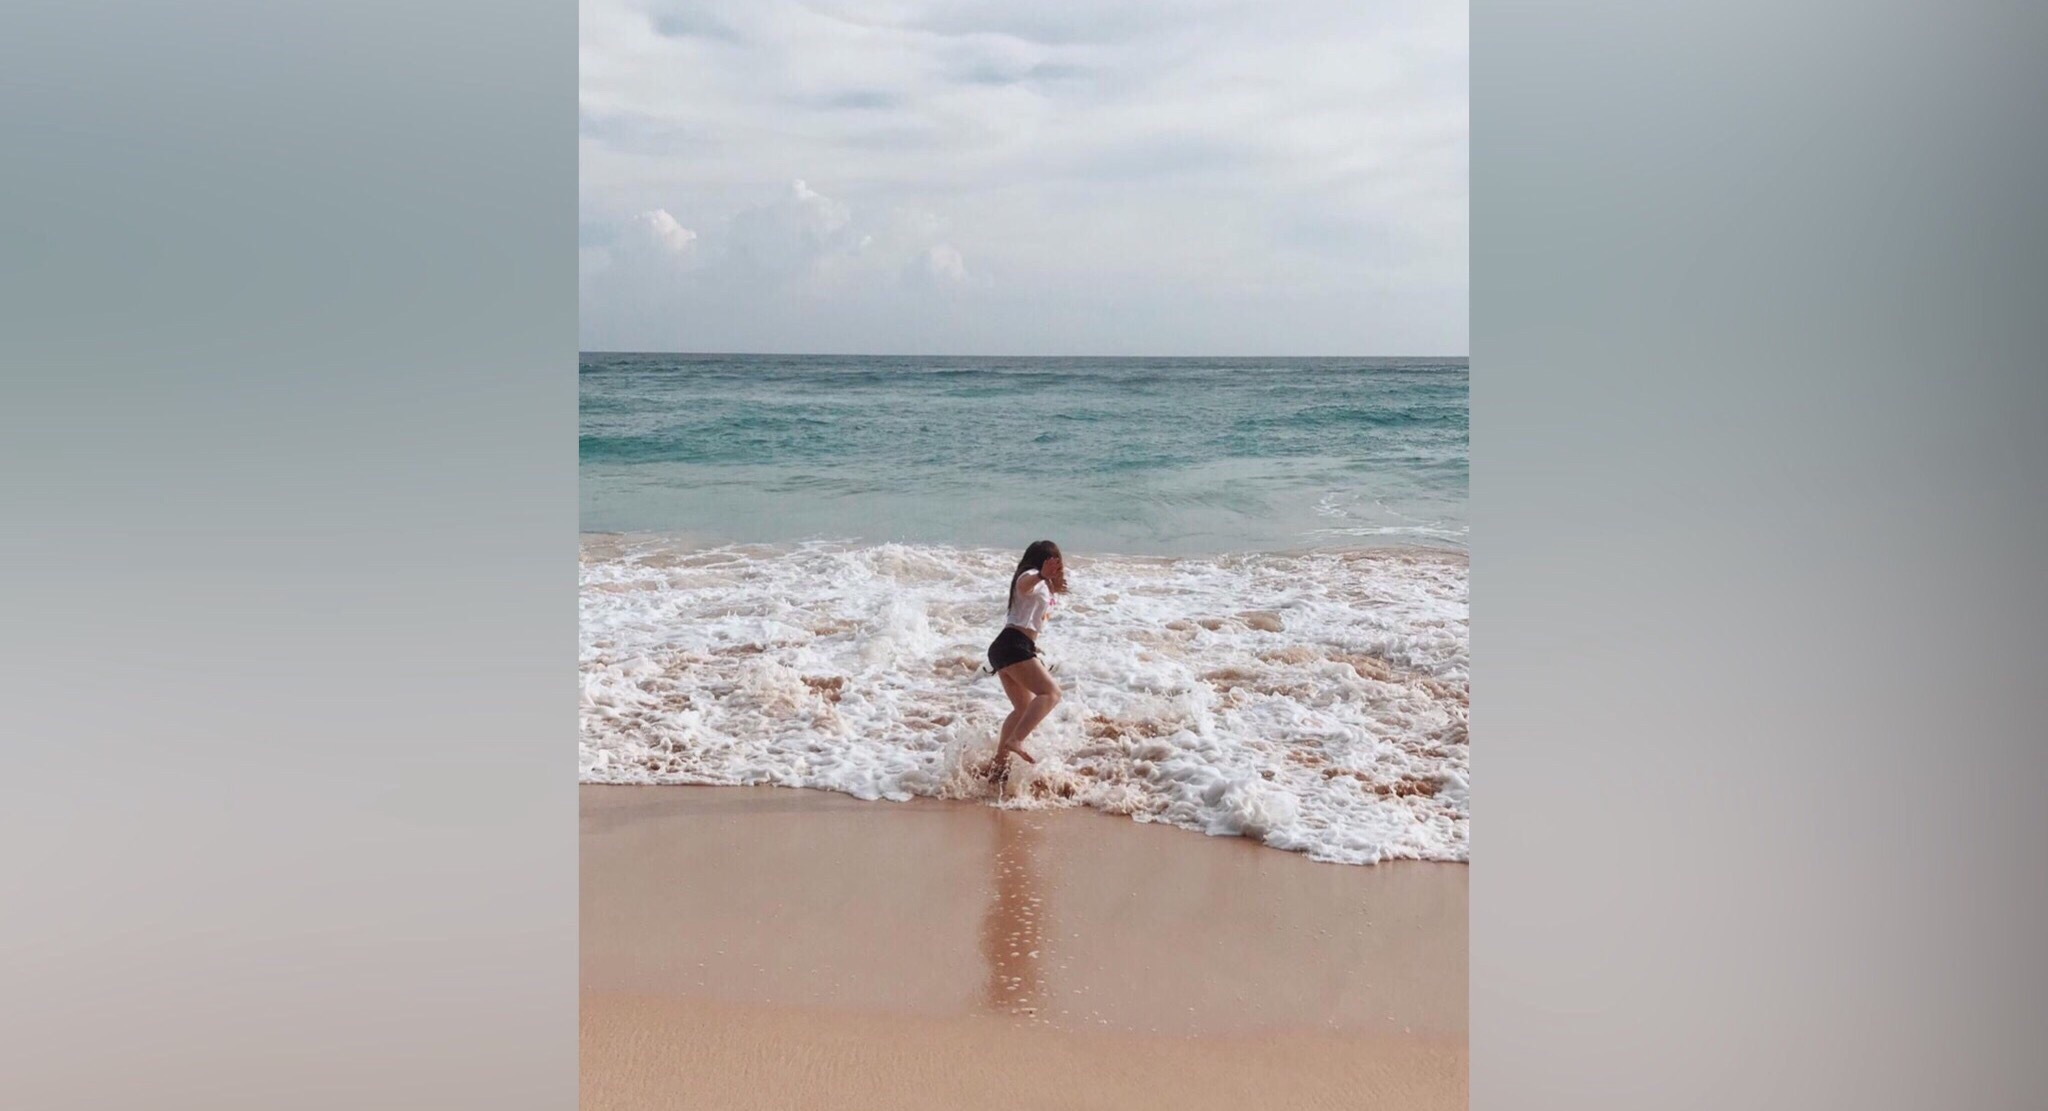 Кристина прыгает от счастья на побережье не просто так. Девушка увидела настоящего кита, о чем очень давно мечтала<br><br>